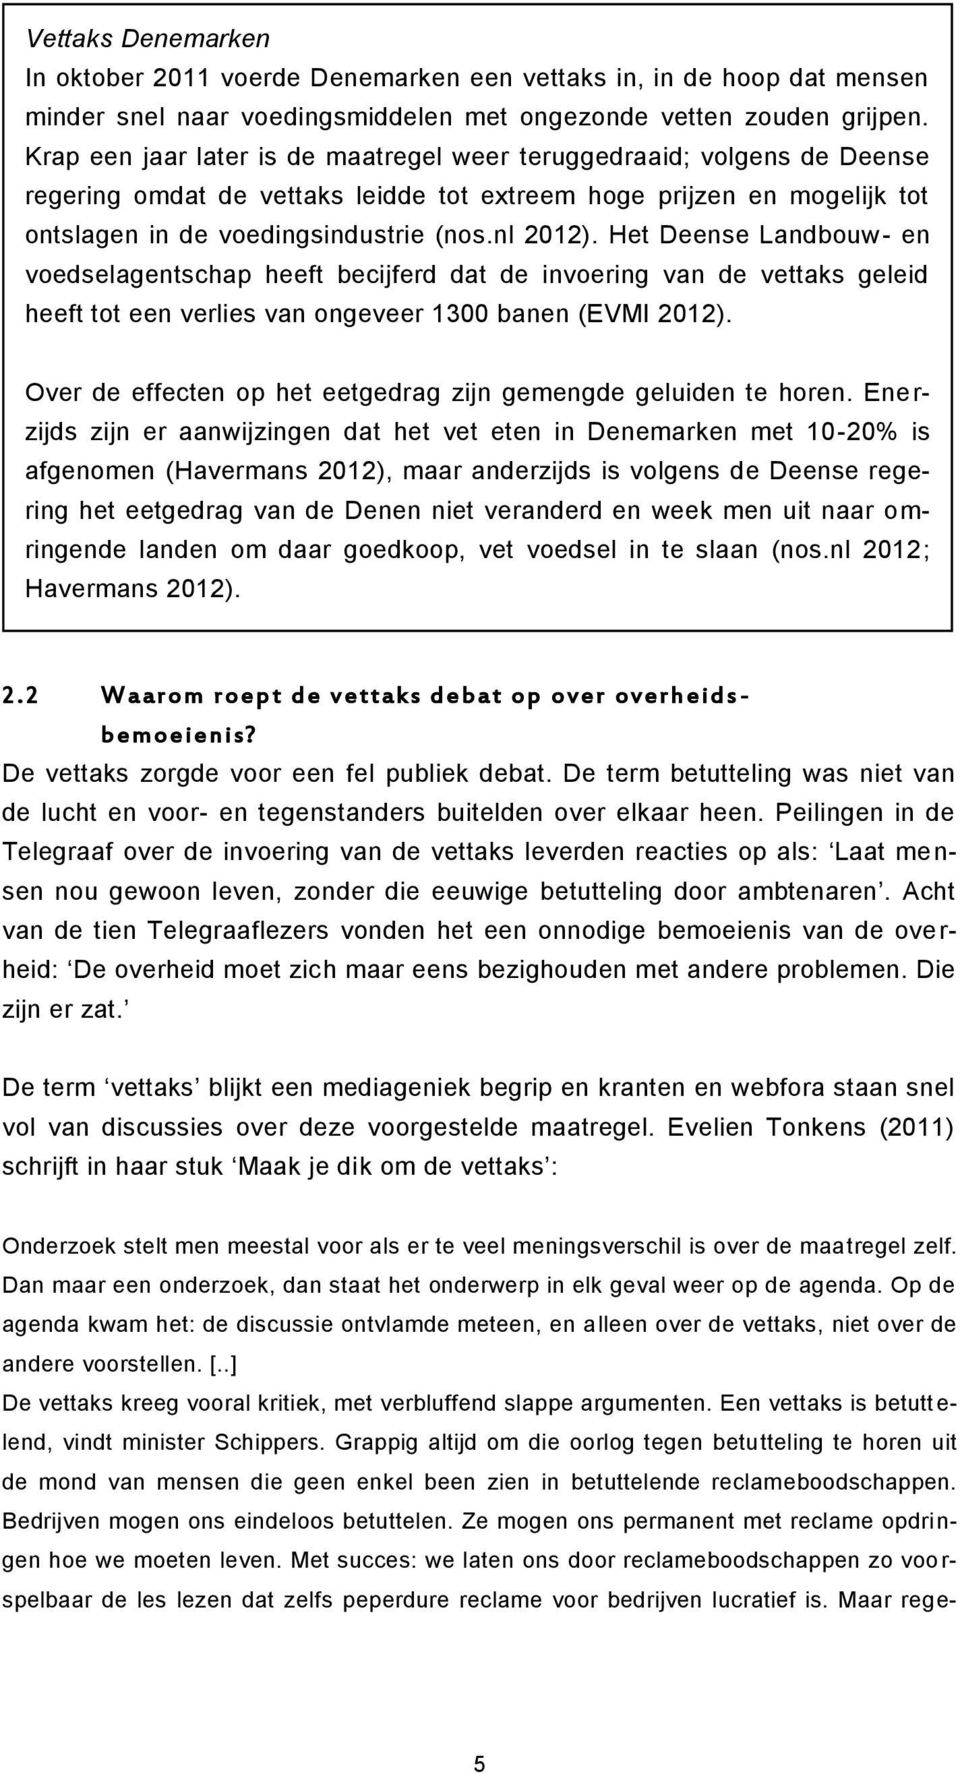 Het Deense Landbouw- en voedselagentschap heeft becijferd dat de invoering van de vettaks geleid heeft tot een verlies van ongeveer 1300 banen (EVMI 2012).